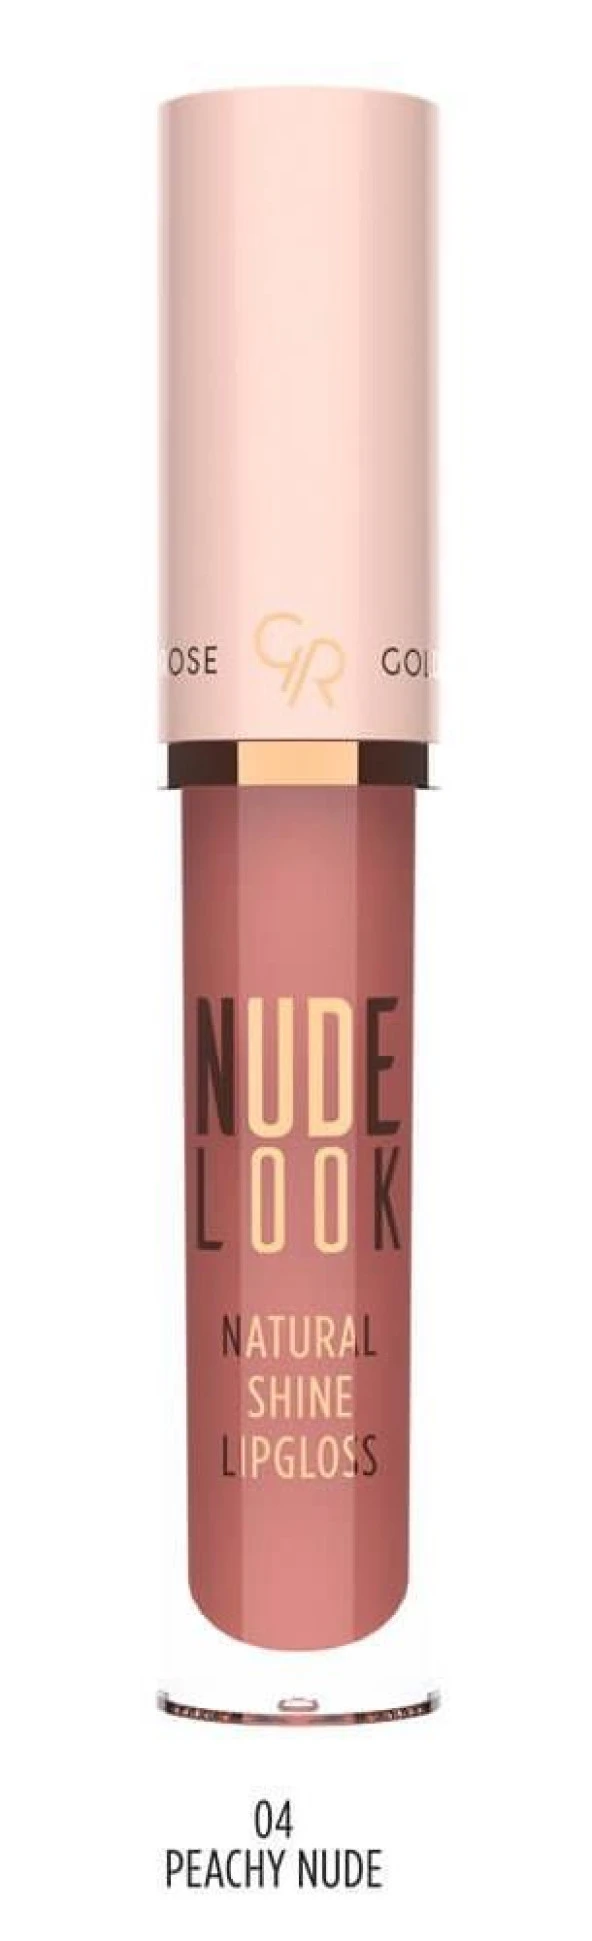 Golden Rose Nude Look Natural Shine Lipgloss No:04 Peachy Nude Doğal Işıltılı Dudak Parlatıcısı -